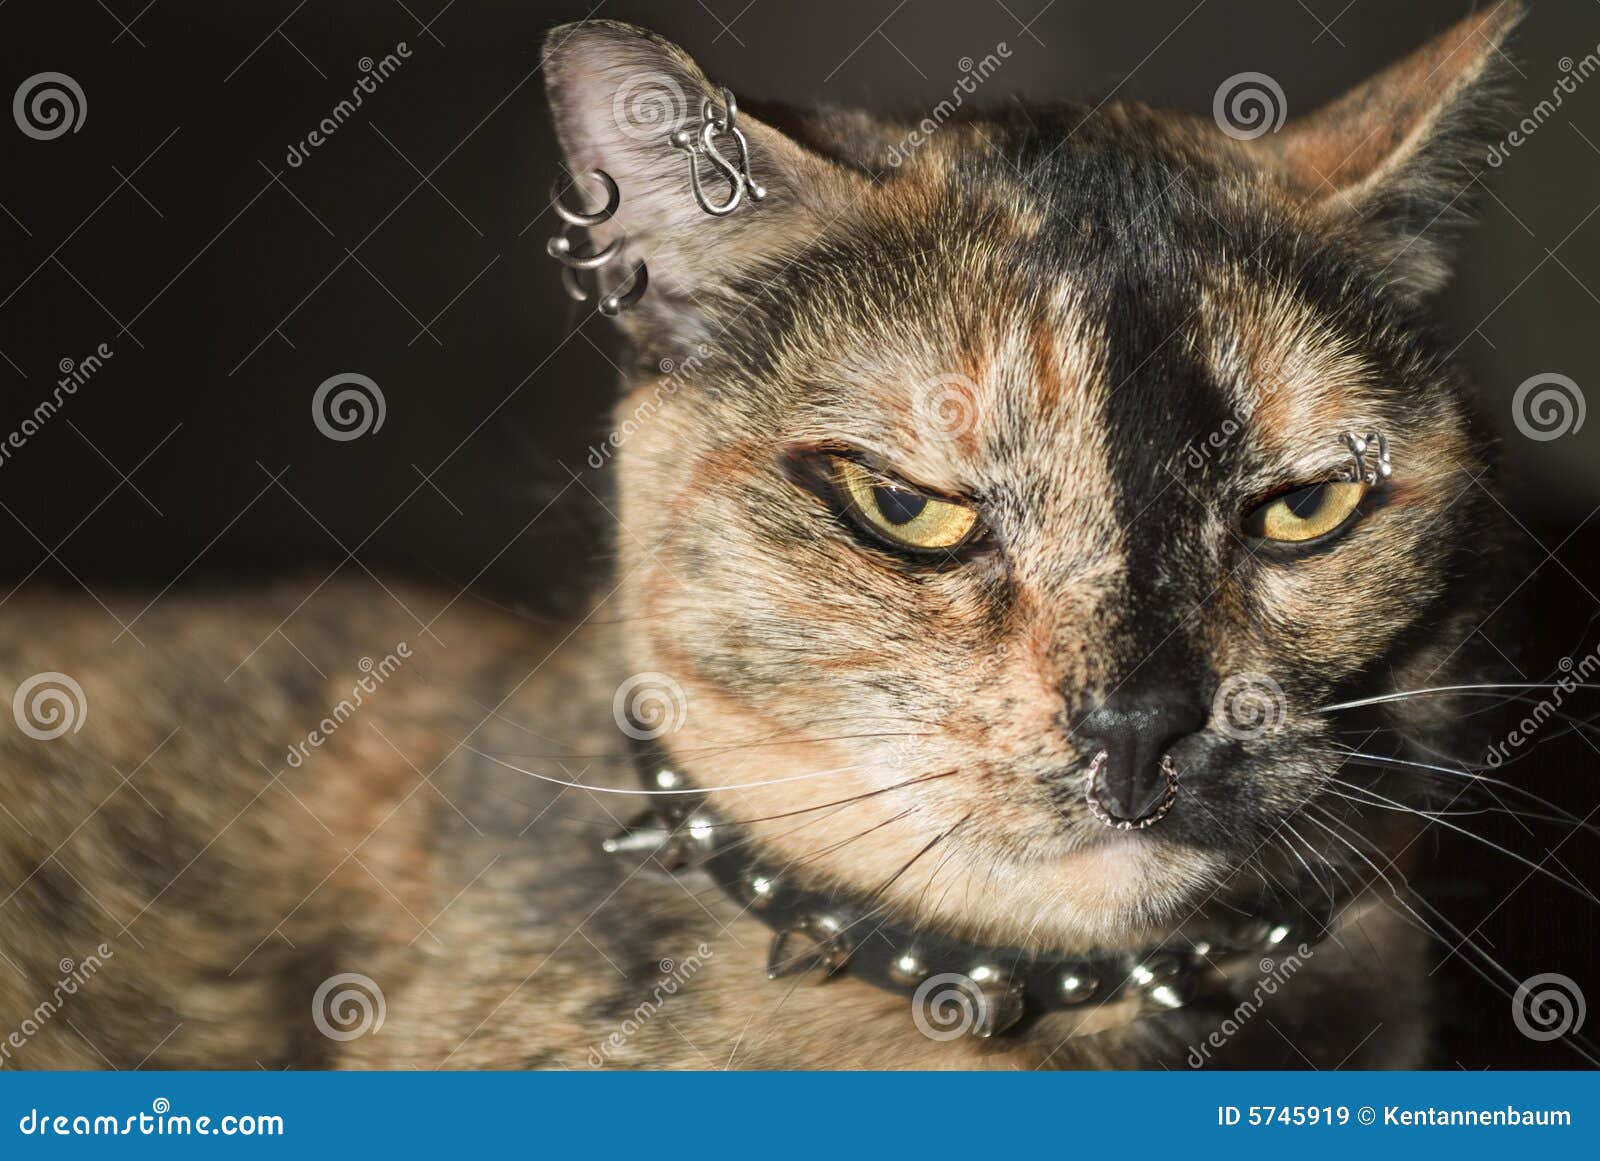 punk cat collar